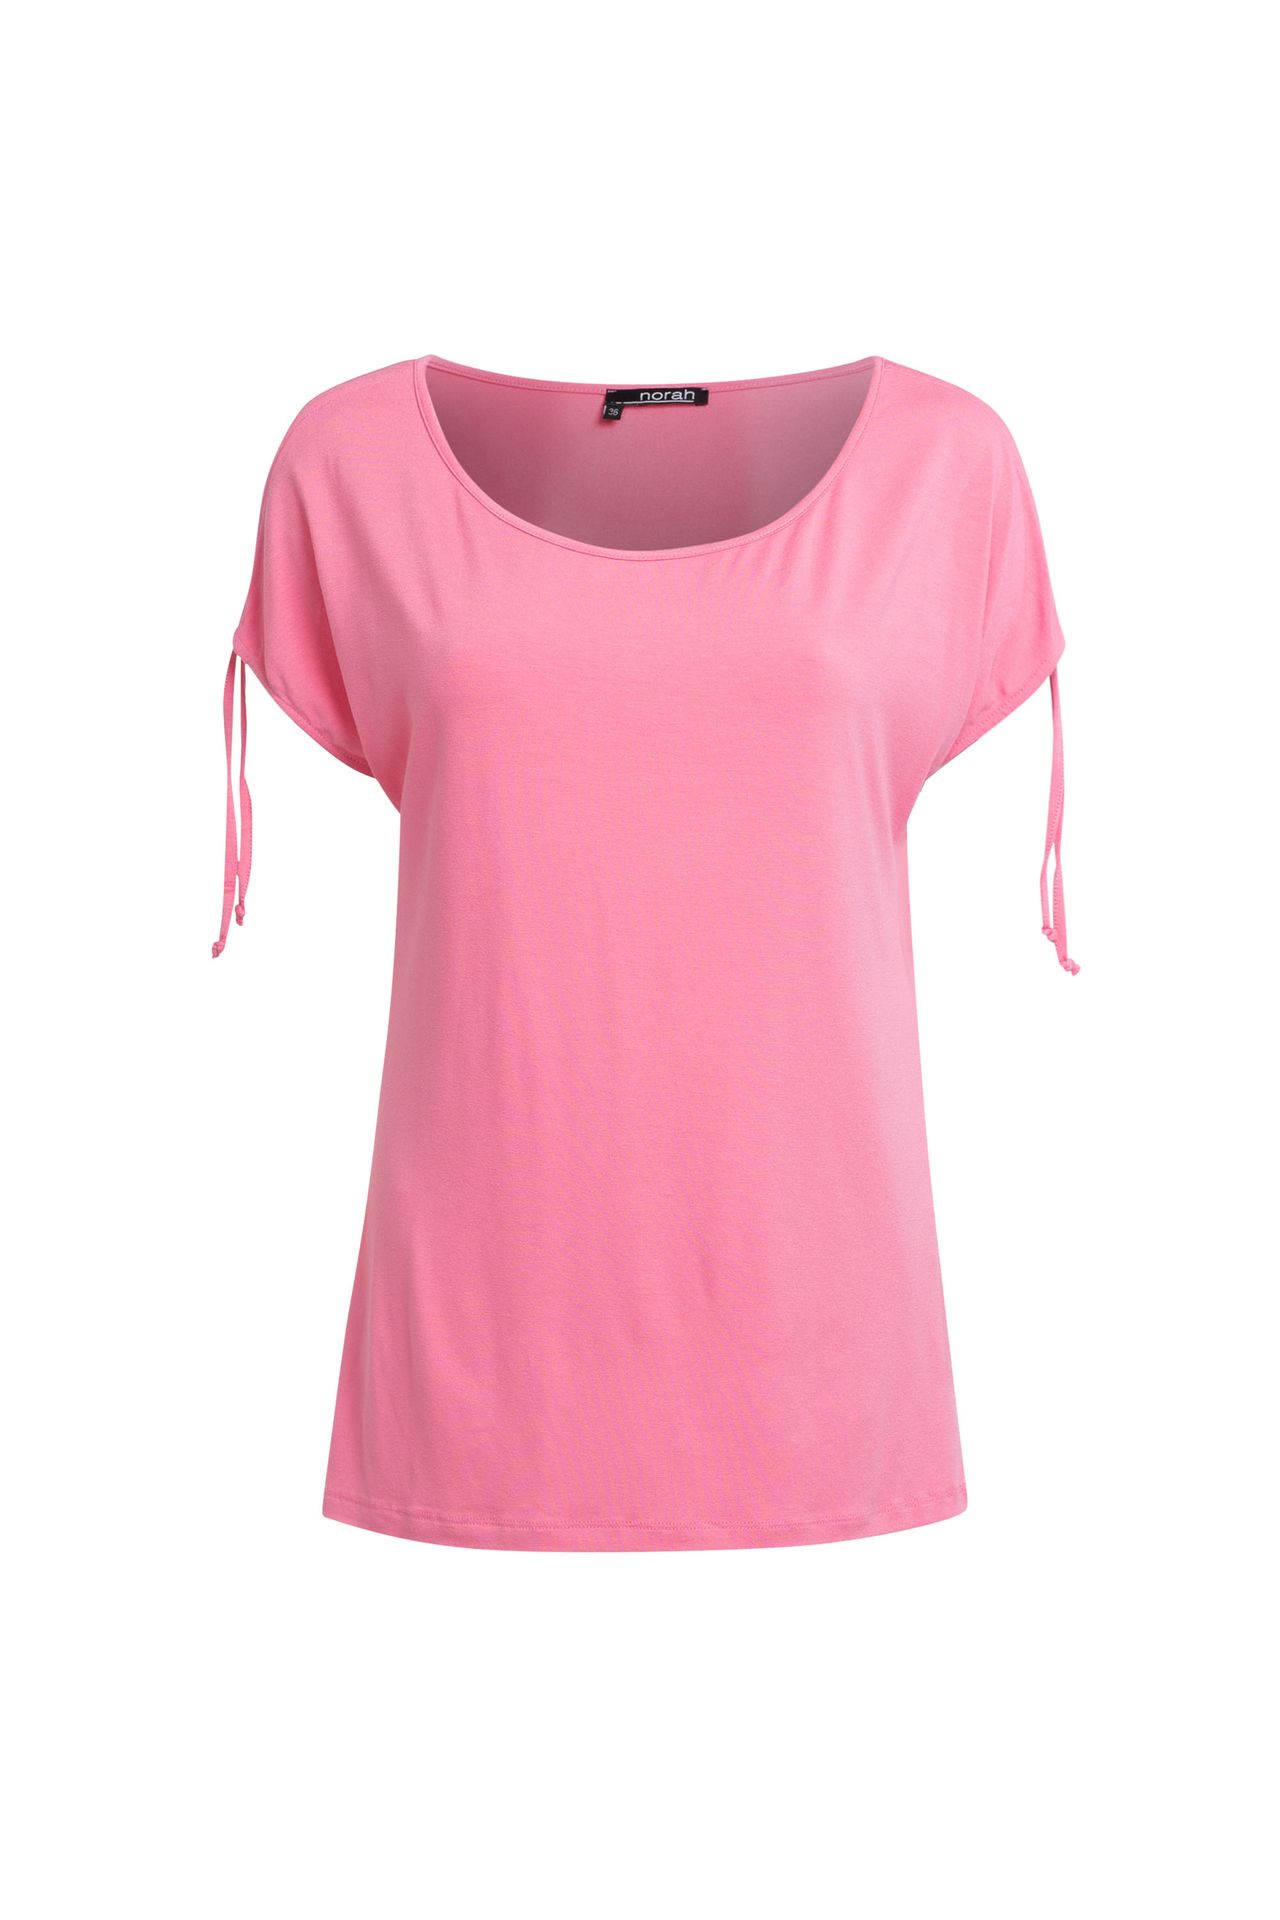 Norah Shirt roze pink 209997-900